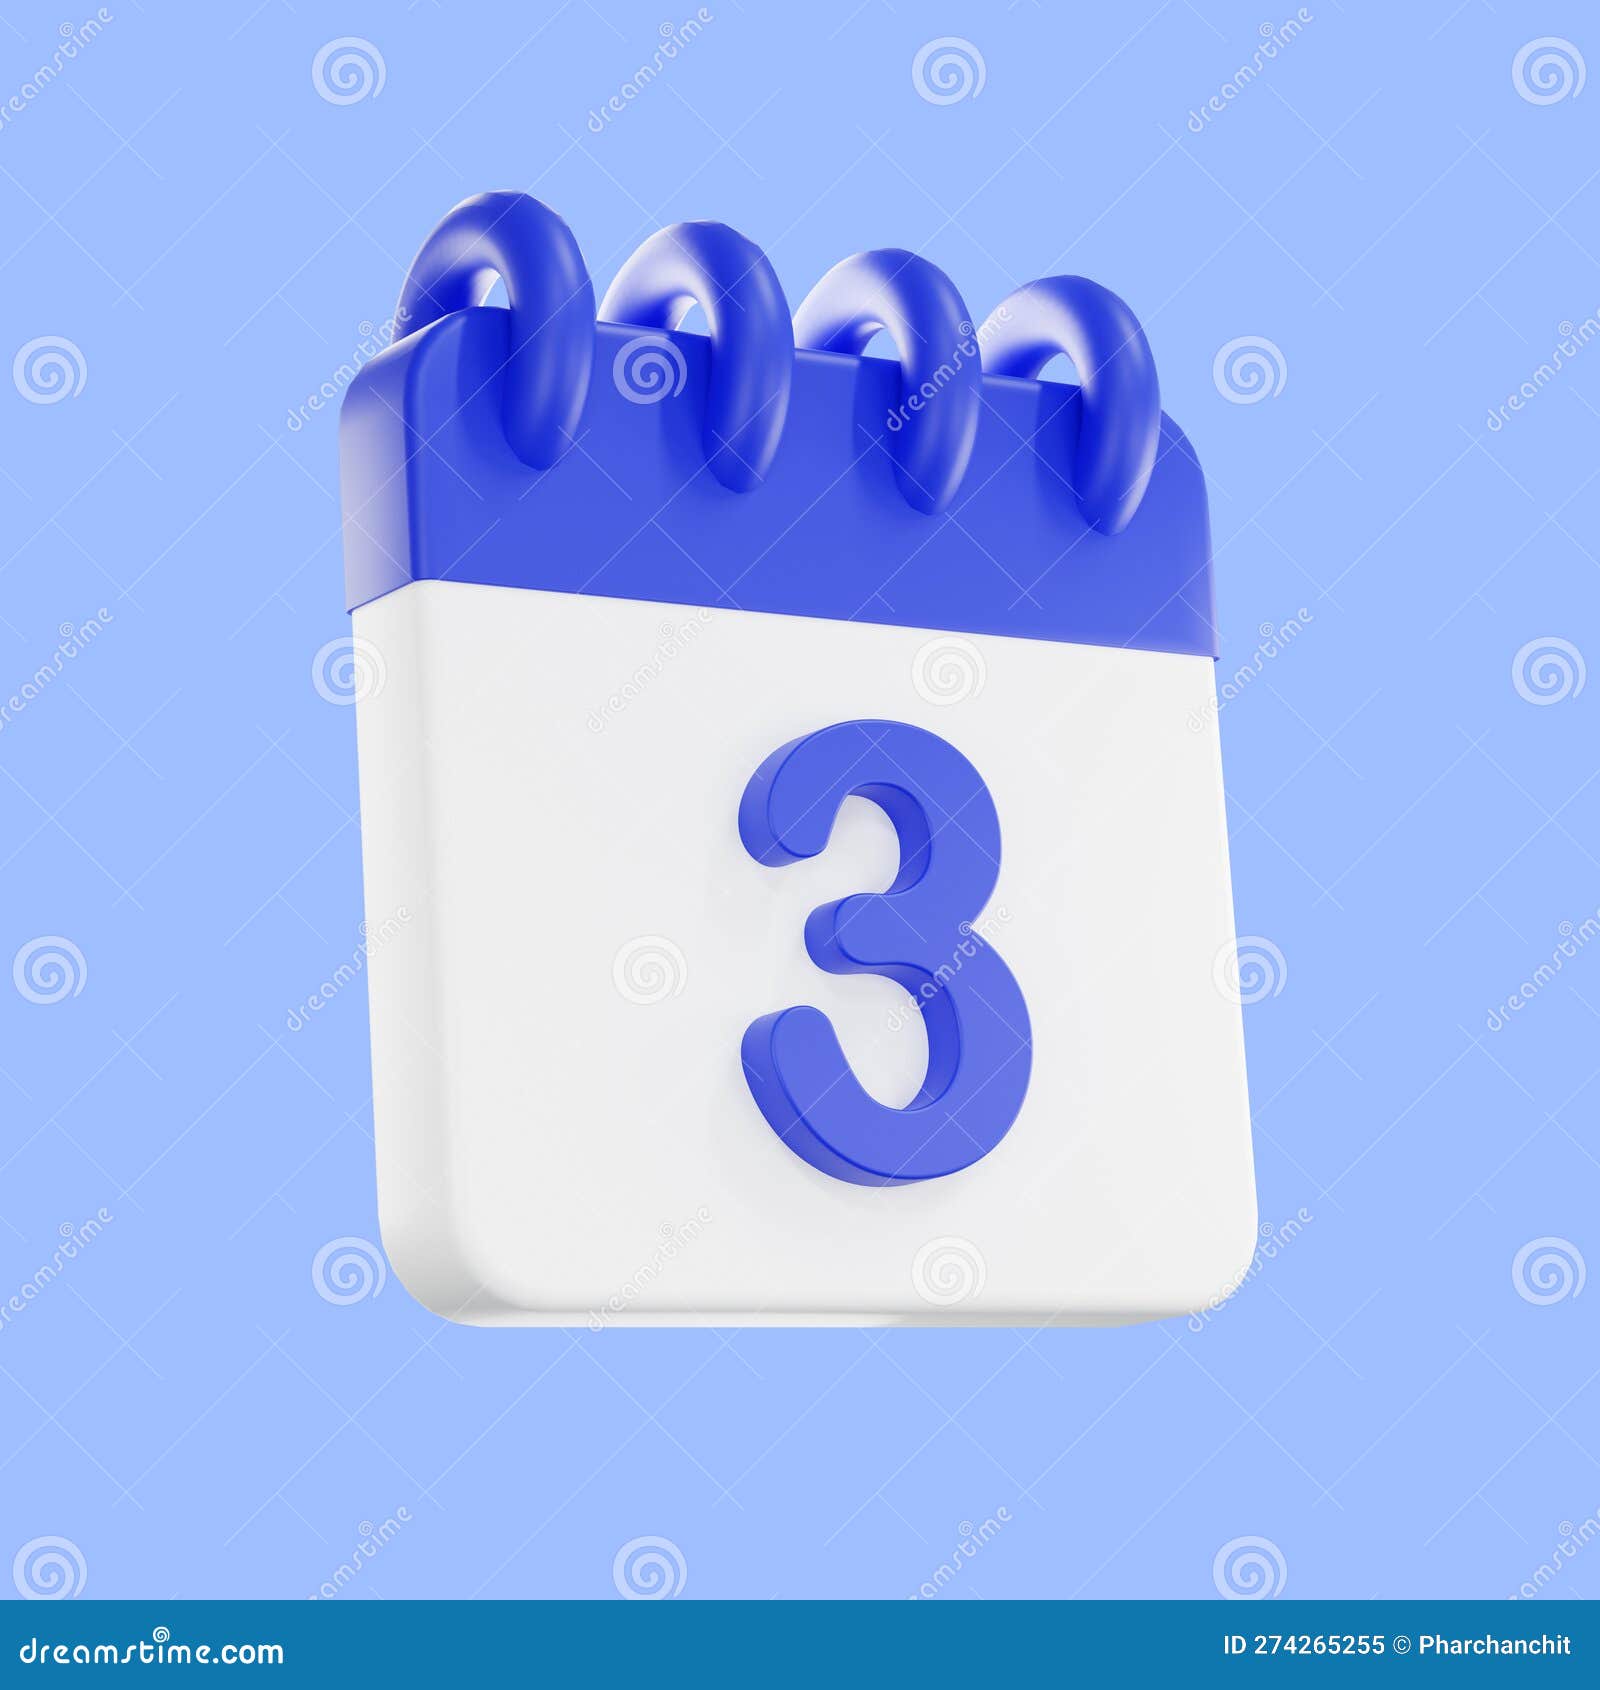 Icona Di Rendering Del Calendario 3d Con Un Giorno 3. Colore Blu E Bianco  Immagine Stock - Illustrazione di bordo, isolato: 274265255